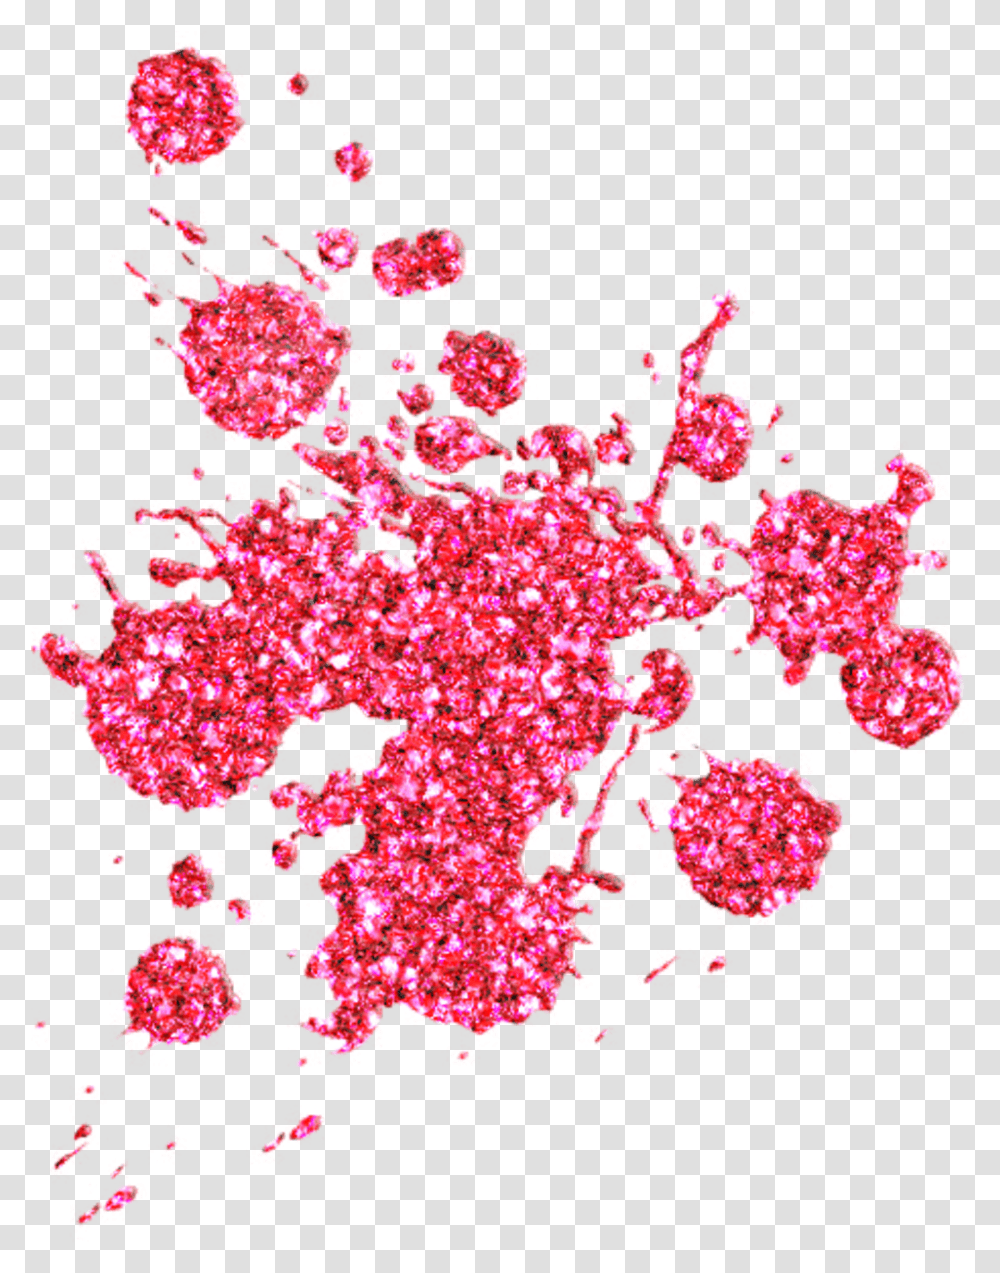 Download Hd Red Sparkle Pink Glitter Splats, Pattern, Fractal, Ornament, Plot Transparent Png